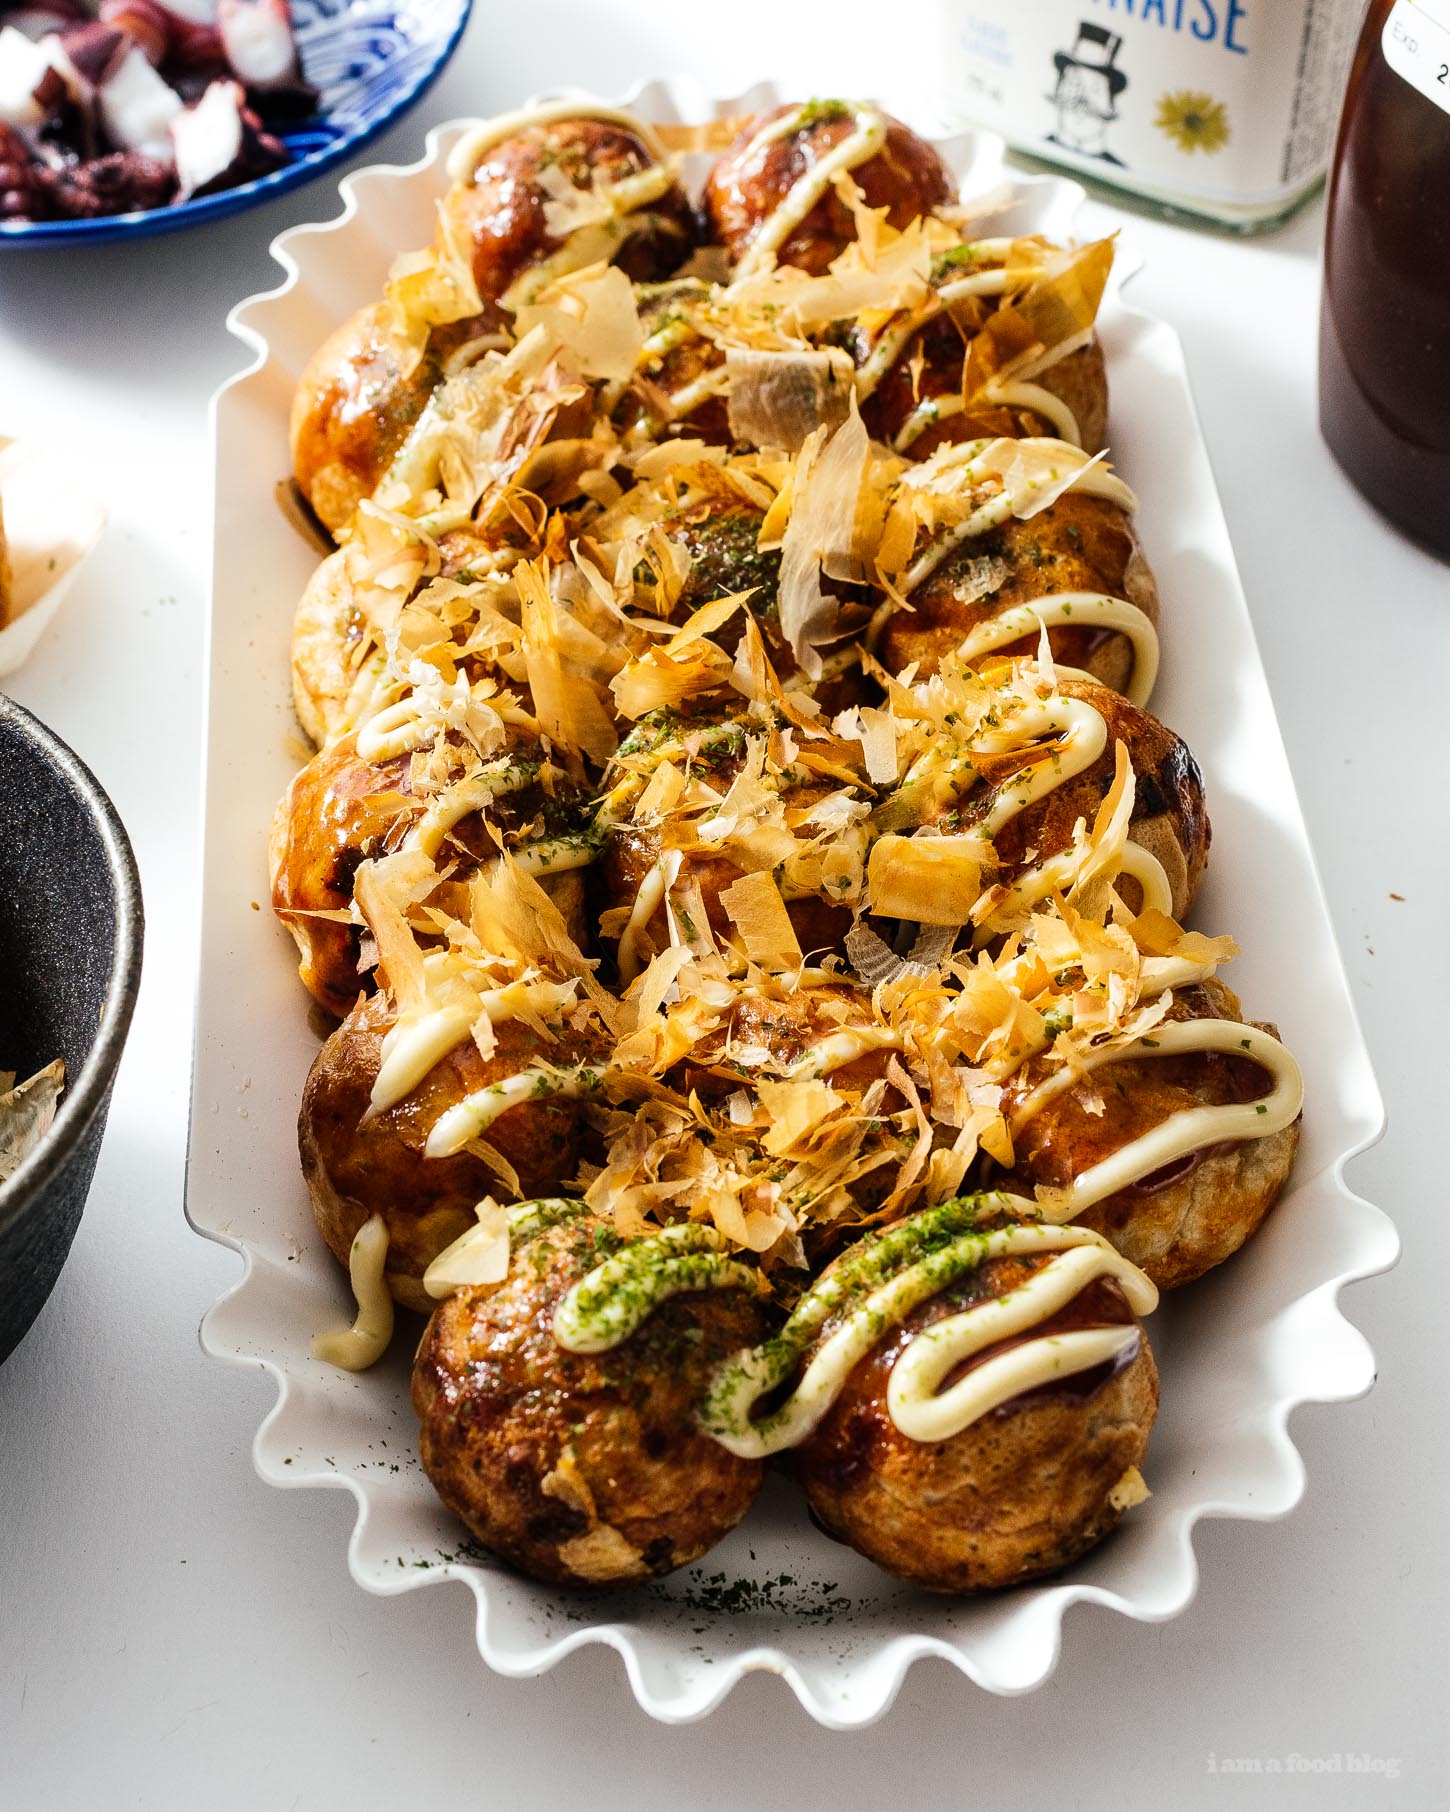 Pase una cena de takoyaki japonés con este takoyaki, la mejor comida callejera japonesa en la mesa con amigos y familiares.  ¡Interactivo, divertido y sabroso!  Receta auténtica de takoyaki #japanesefood #recipes #takoyaki #streetfood #japan #tokyo #howto